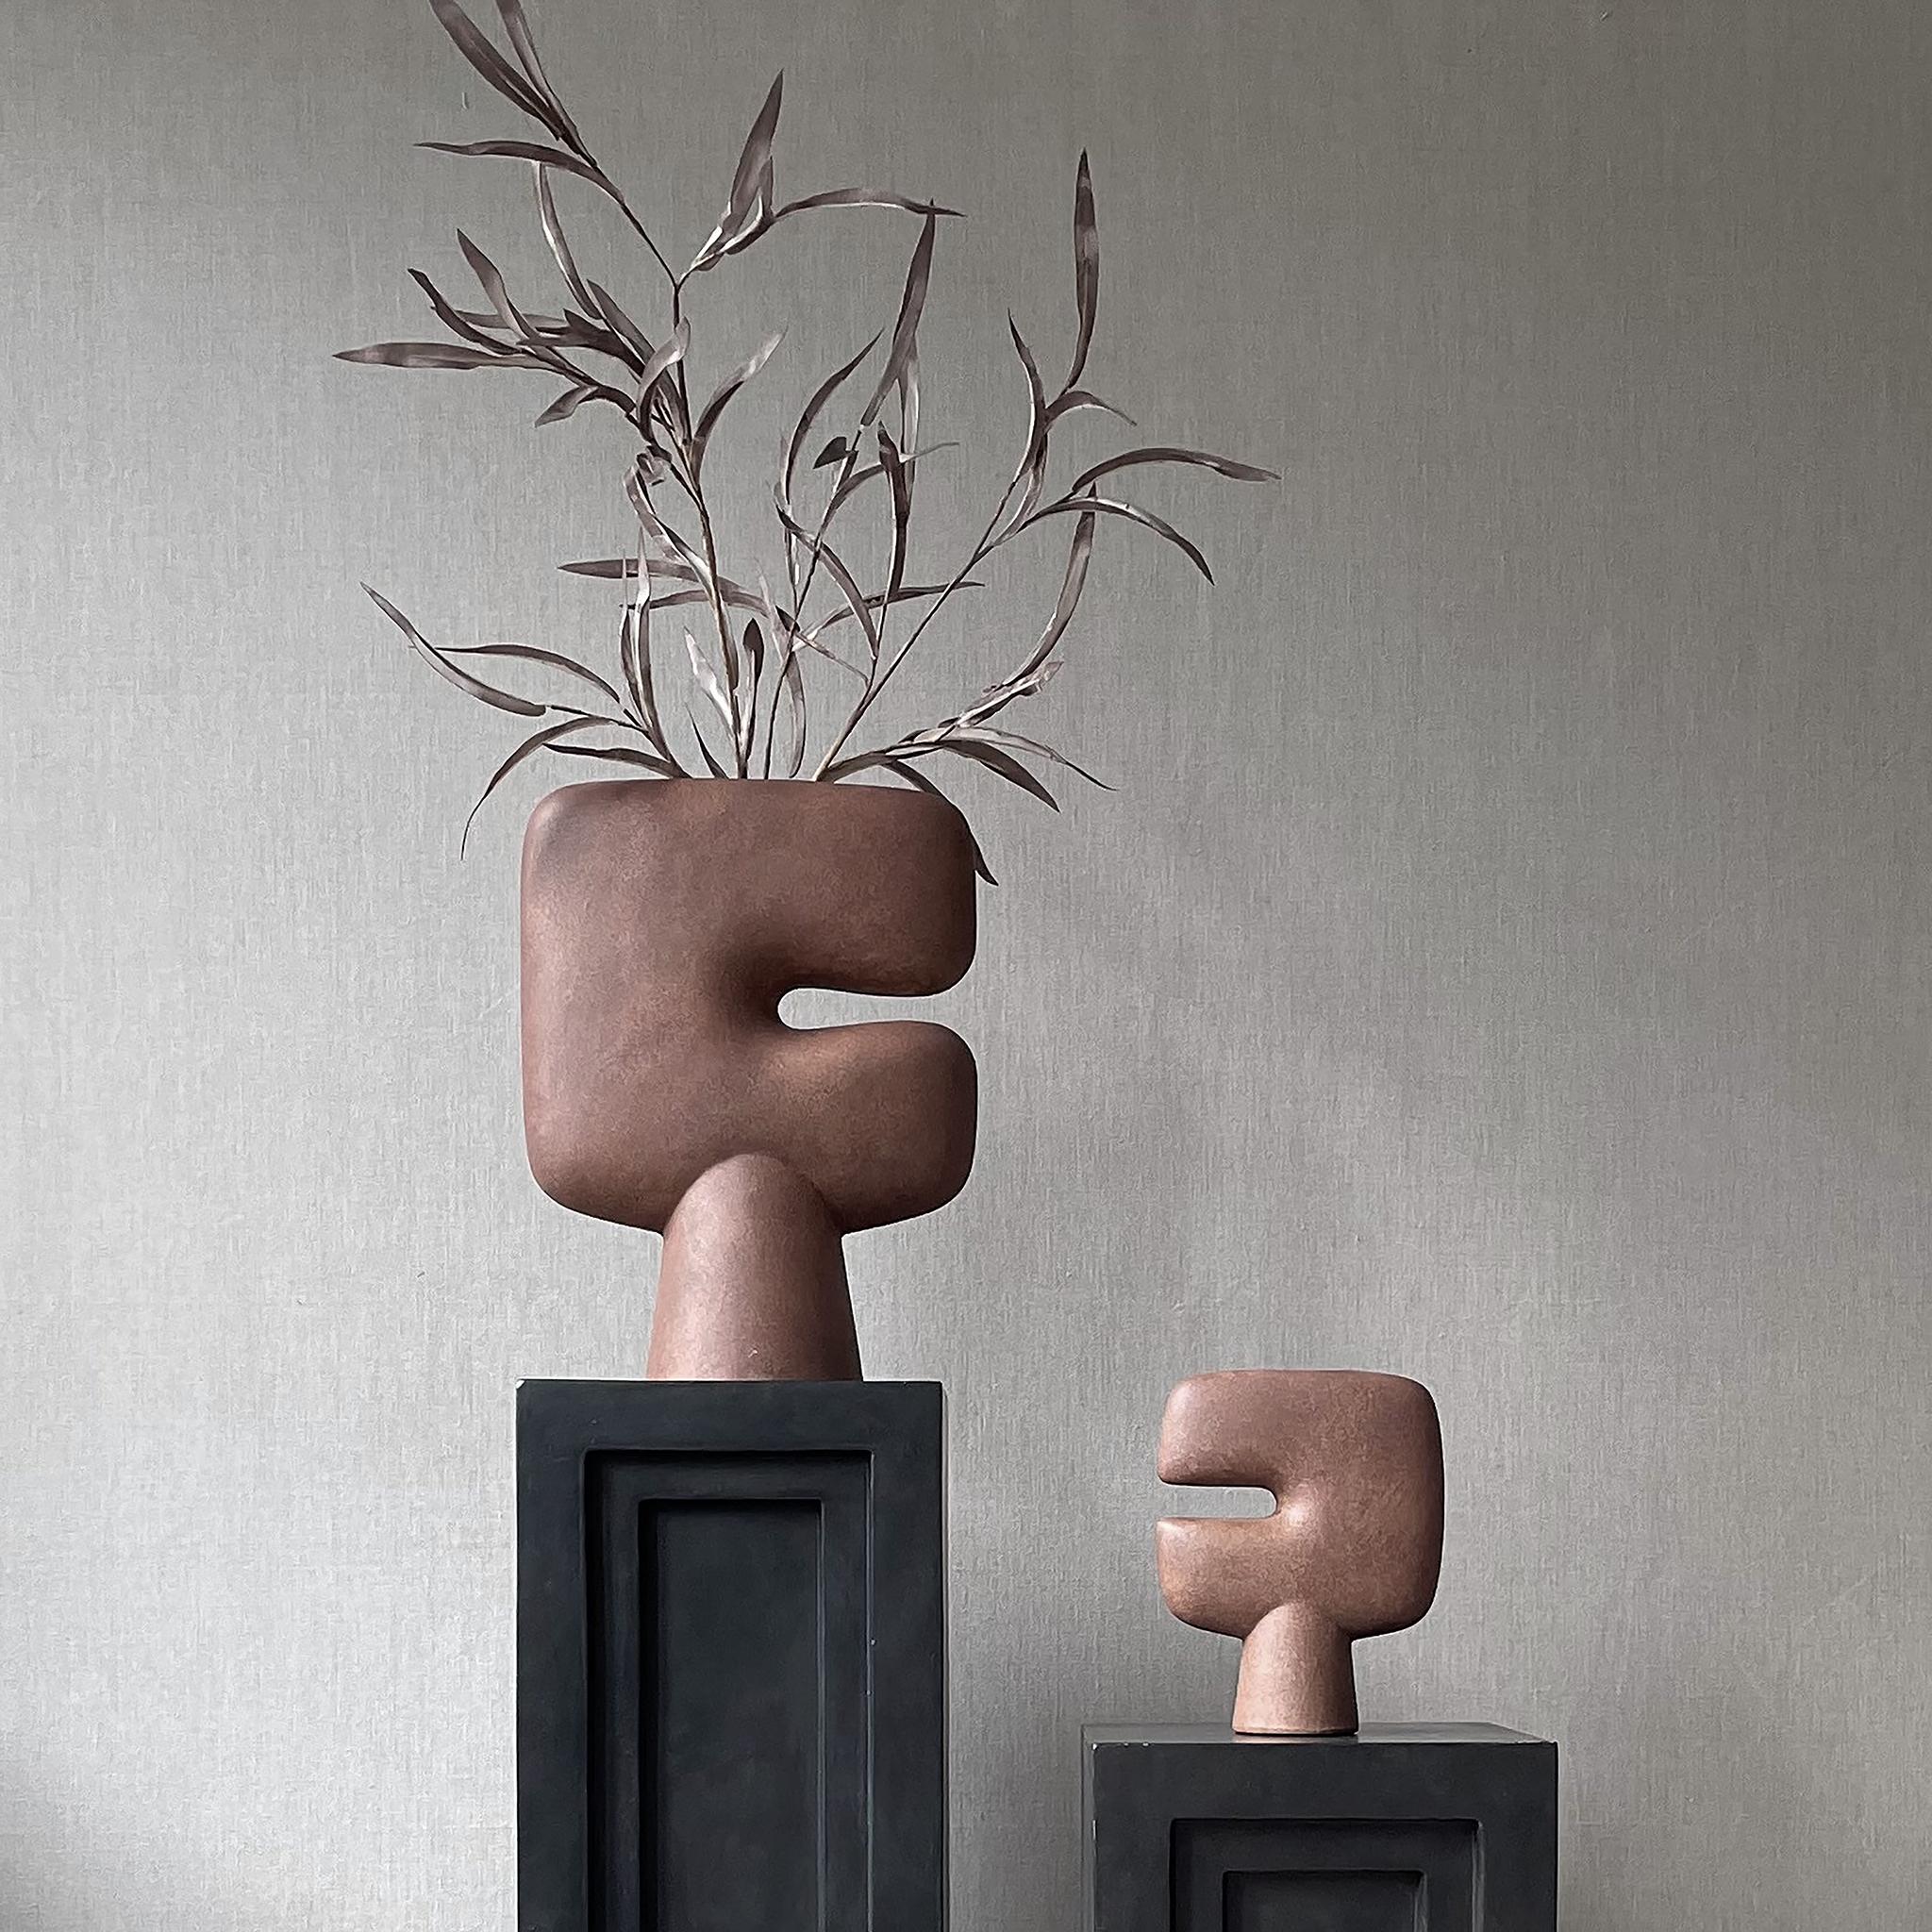 2er-Set Terrakotta-Stammesvase medio von 101 Copenhagen
Entworfen von Kristian Sofus Hansen & Tommy Hyldahl
Abmessungen: L24 / B10 / H30 CM
MATERIALIEN: Keramik

Die Tribal-Kollektion ist eine Serie von Vasen, die als skulpturale Umsetzung der